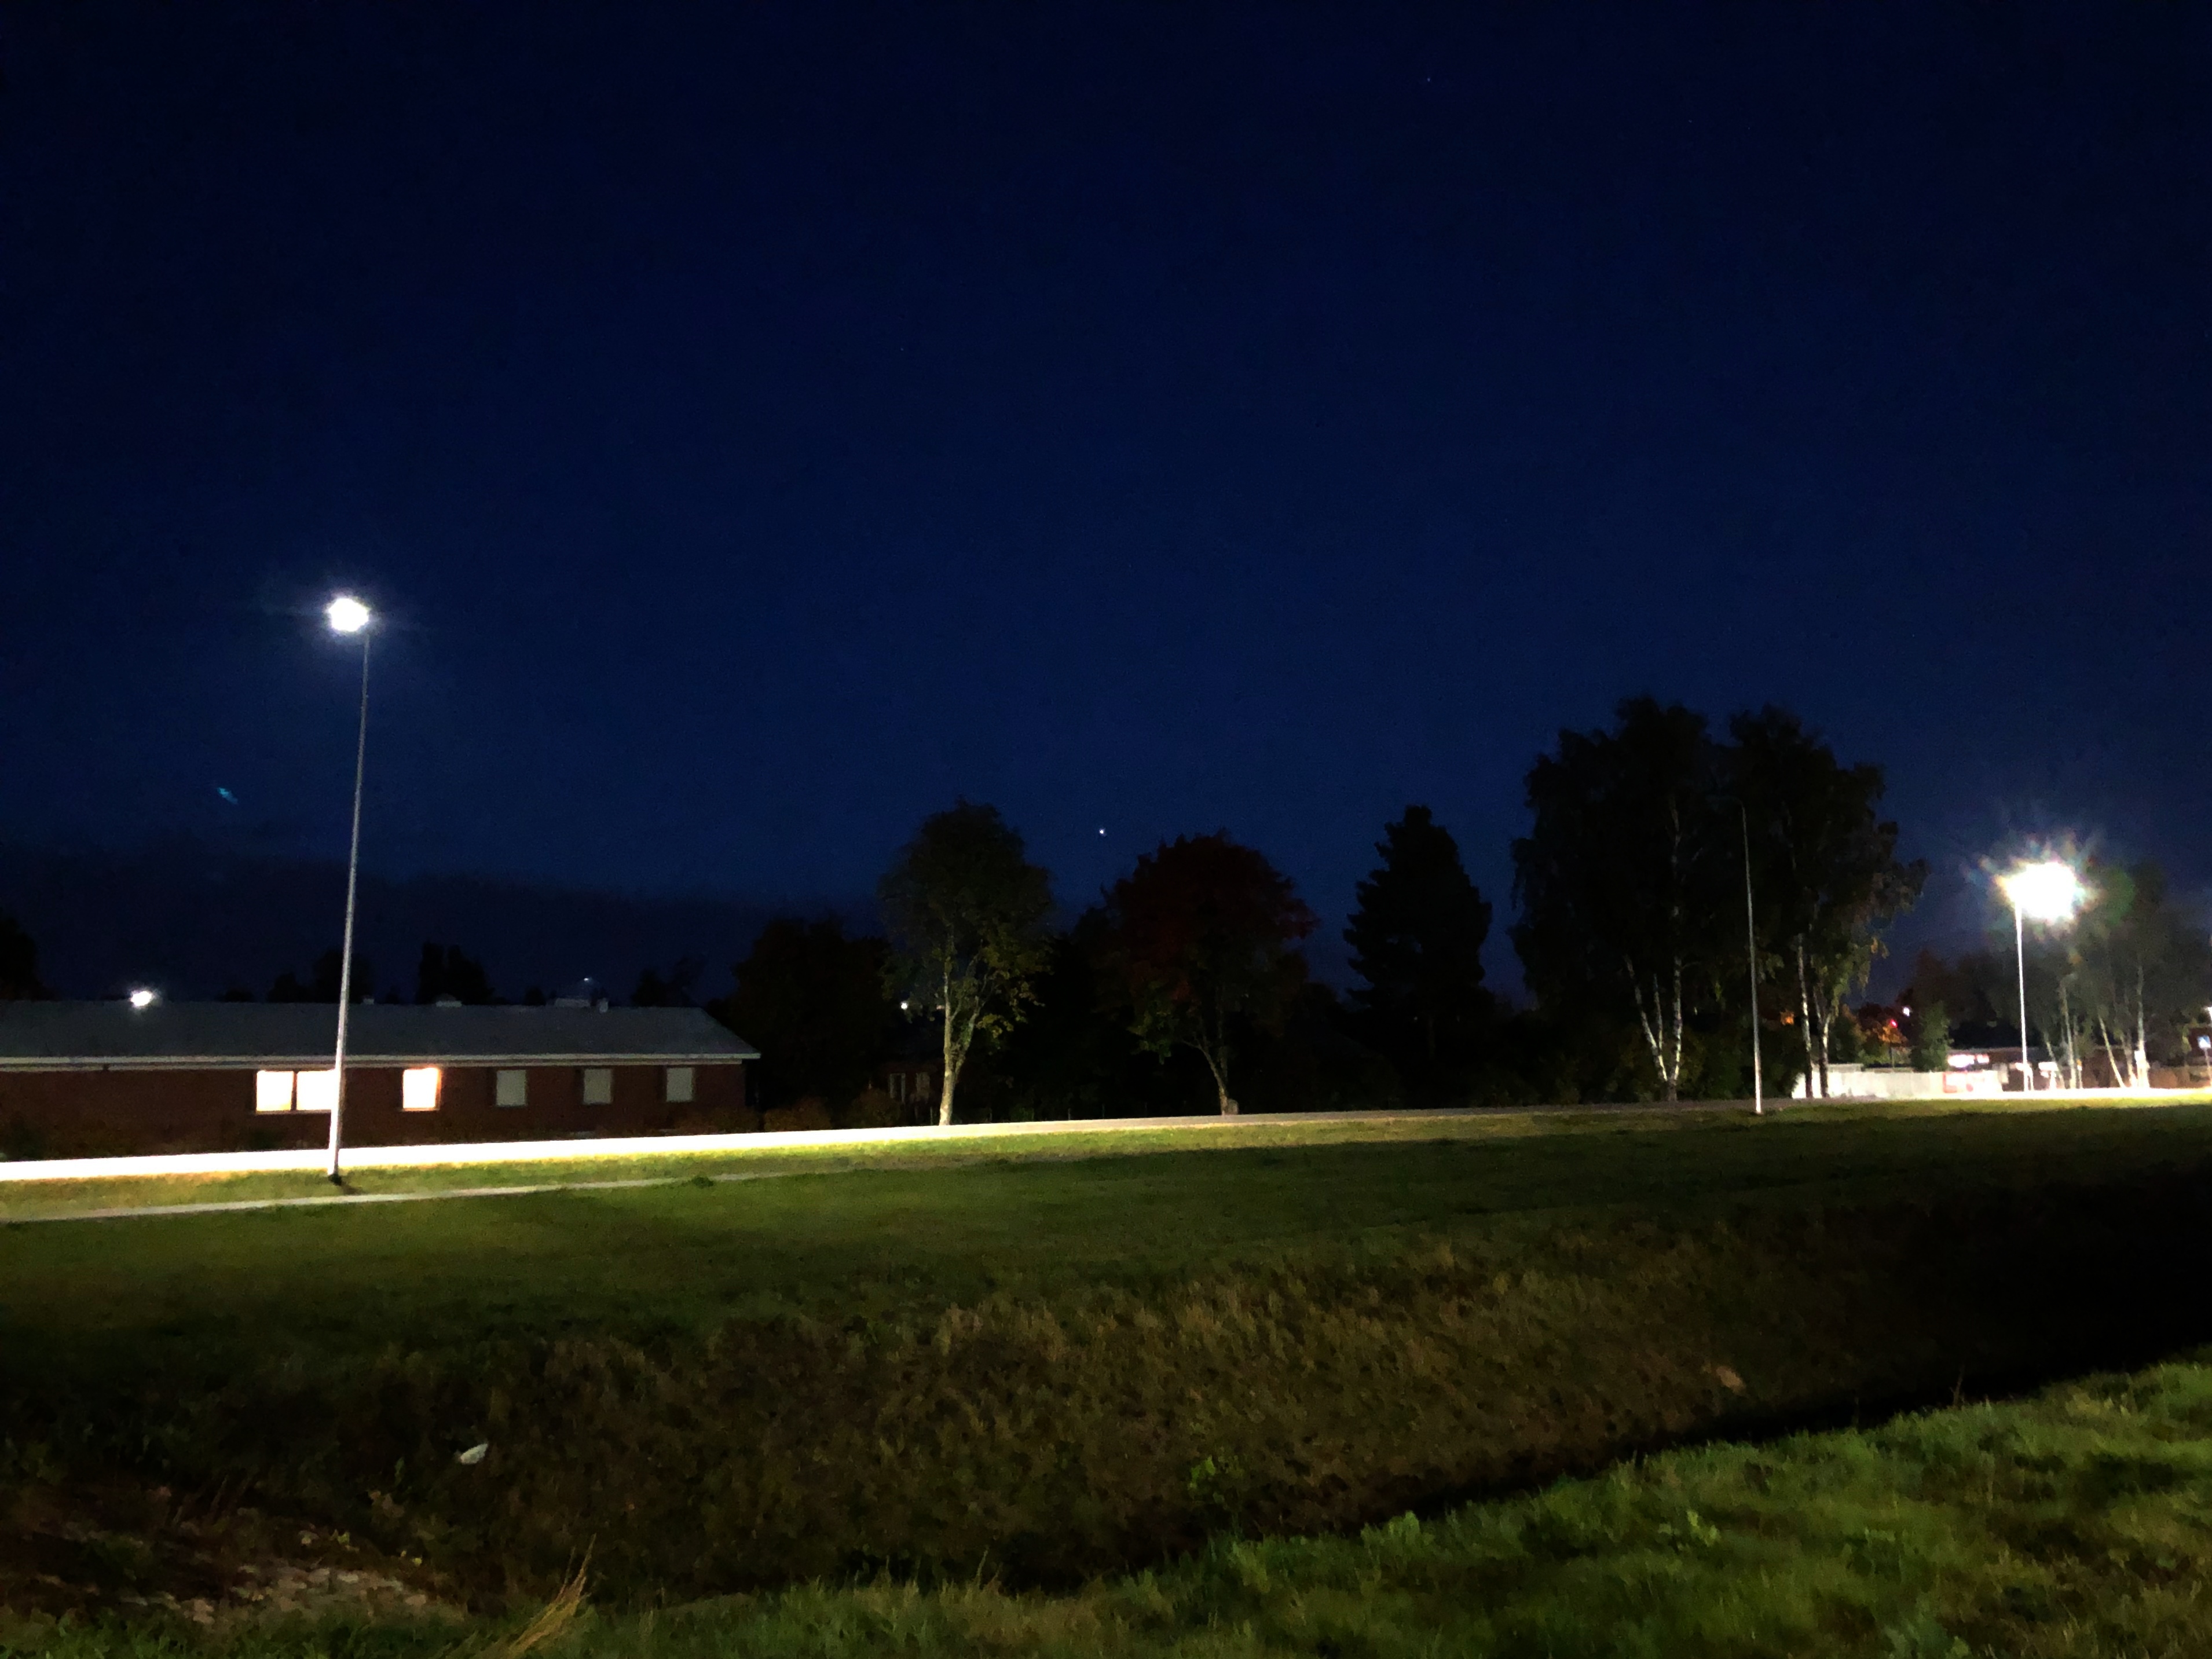 Tummansininen iltahämärä. Taivaanrannassa (keskellä kuvaa) valopiste (Jupiter). Katuvalojen valaisema tie, ja etualalla vihreää ruohoa sekä oja.